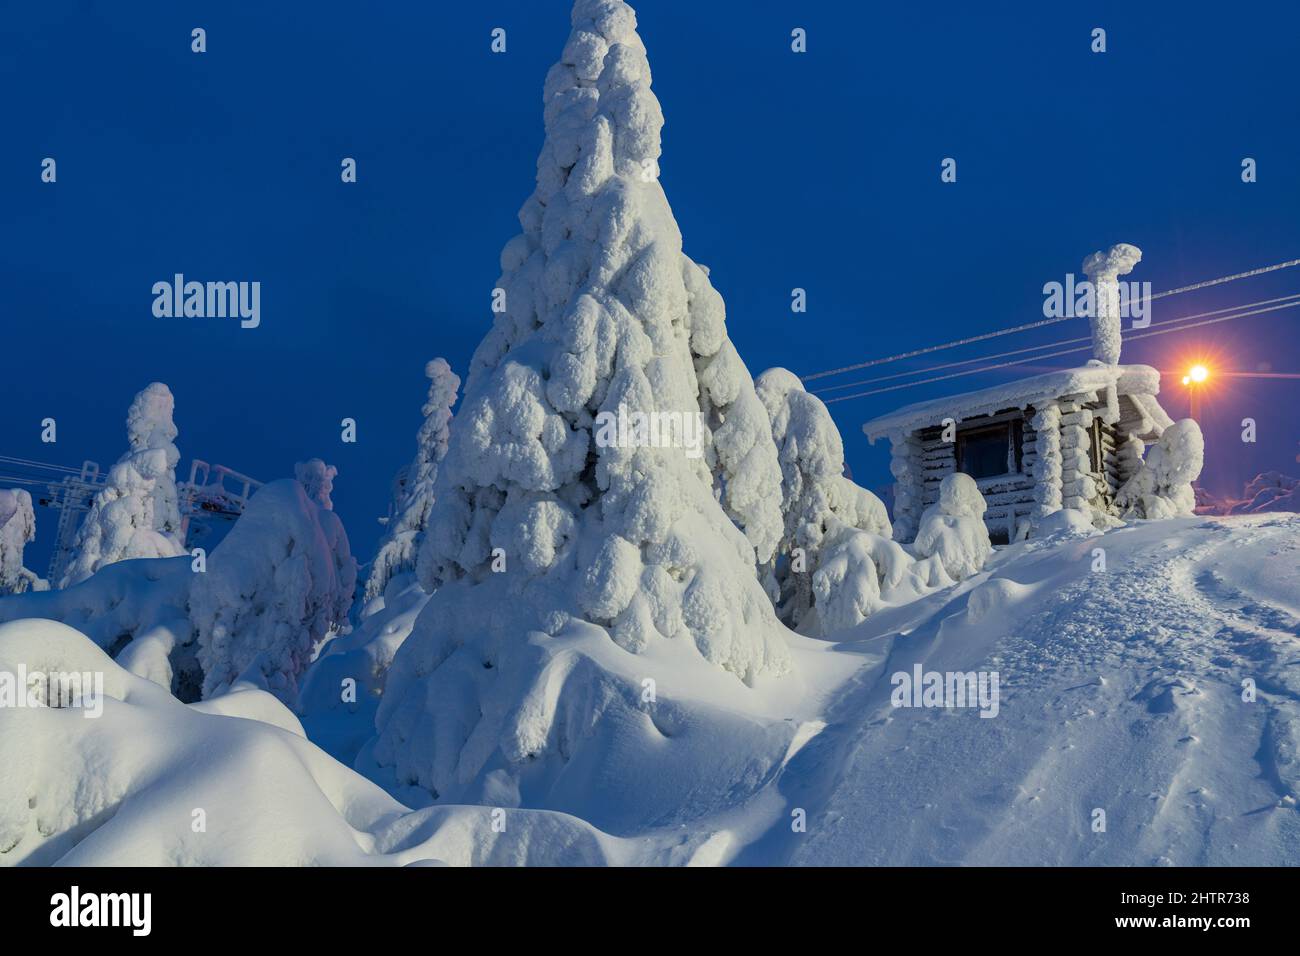 In der gefrorenen Landschaft des Skigebiets ISO-Syote, Lappland, Finnland, befinden sich Holzhütten und Fichten, die mit Schnee bedeckt sind Stockfoto